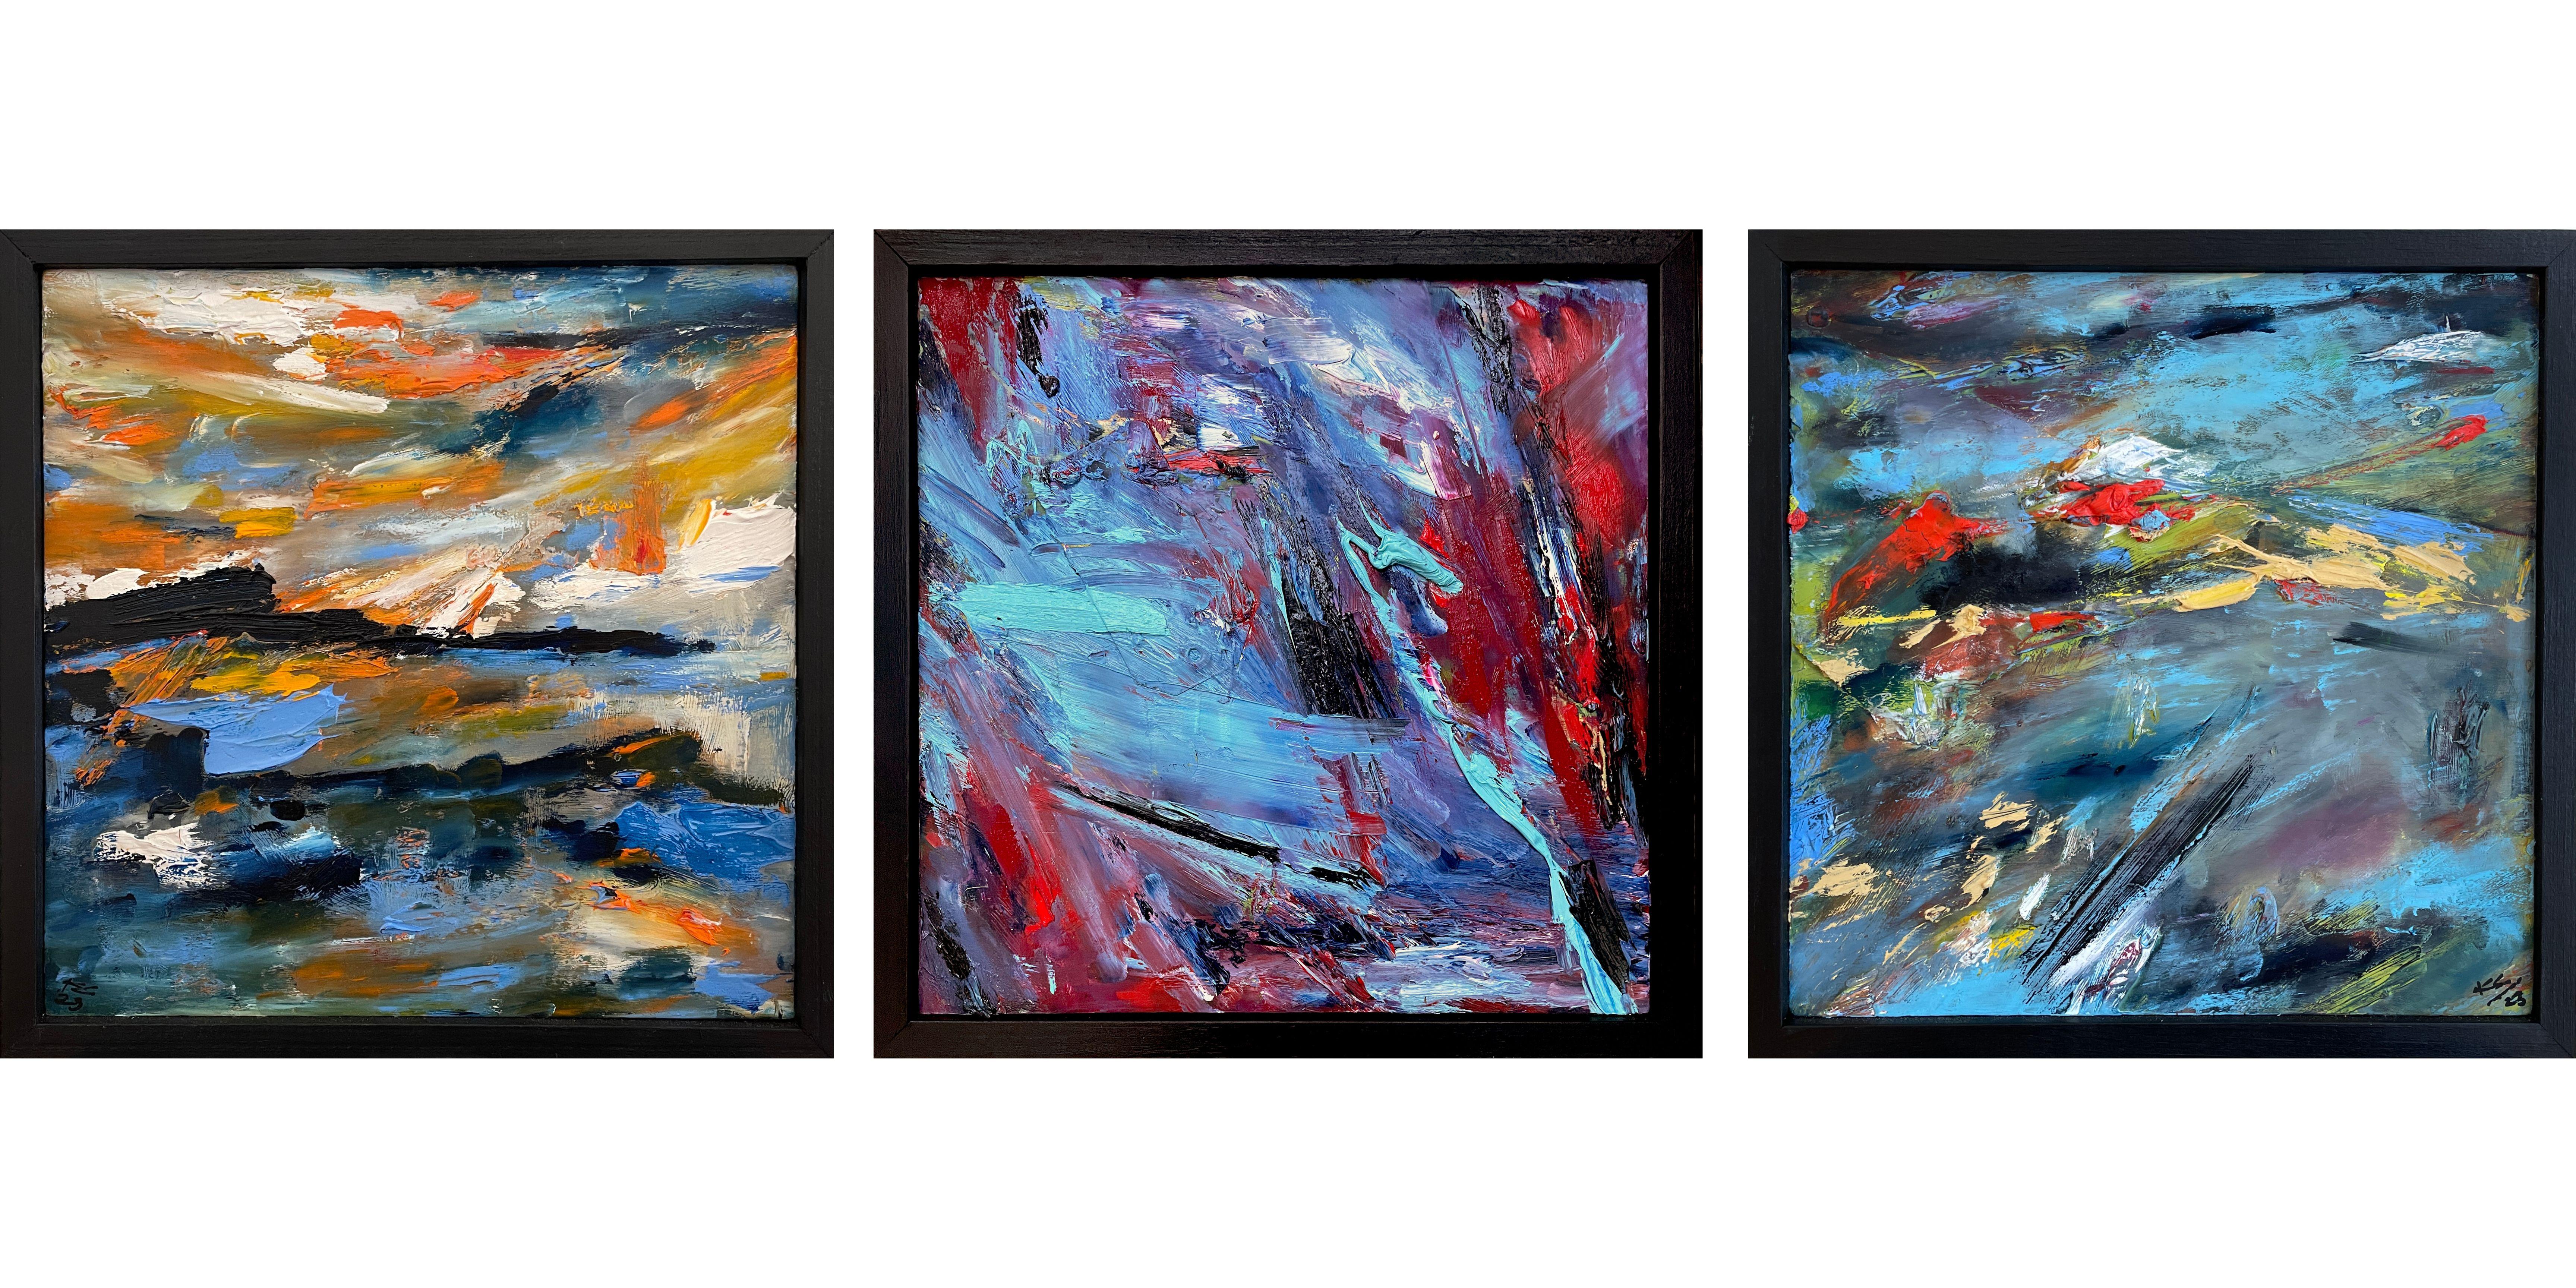 Dans ce triptyque expressionniste abstrait de 12" x 36", l'artiste Kristy Chettle capture l'essence vibrante des paysages variés de la baie de Monterey. Les panneaux sont une symphonie de couleurs, avec des bleus céruléens et saphir qui évoquent les